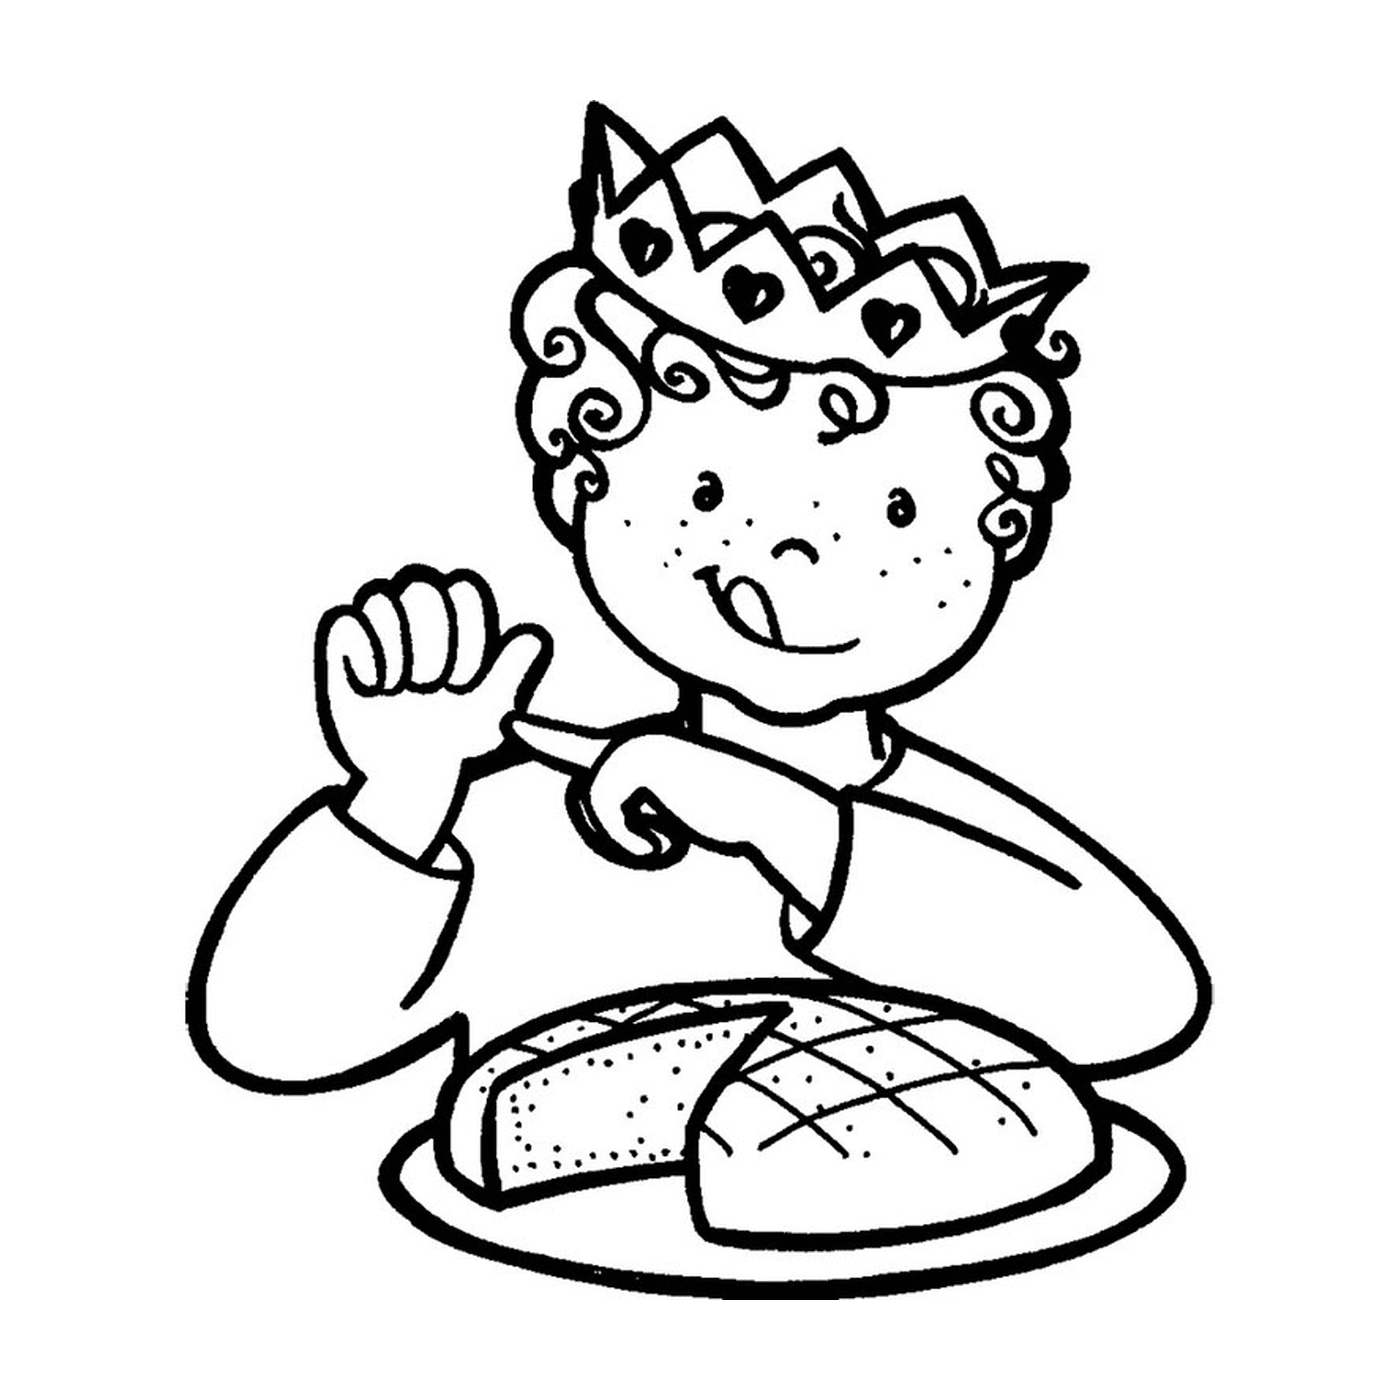  Uma criança celebra a epifania com um bolo de reis 